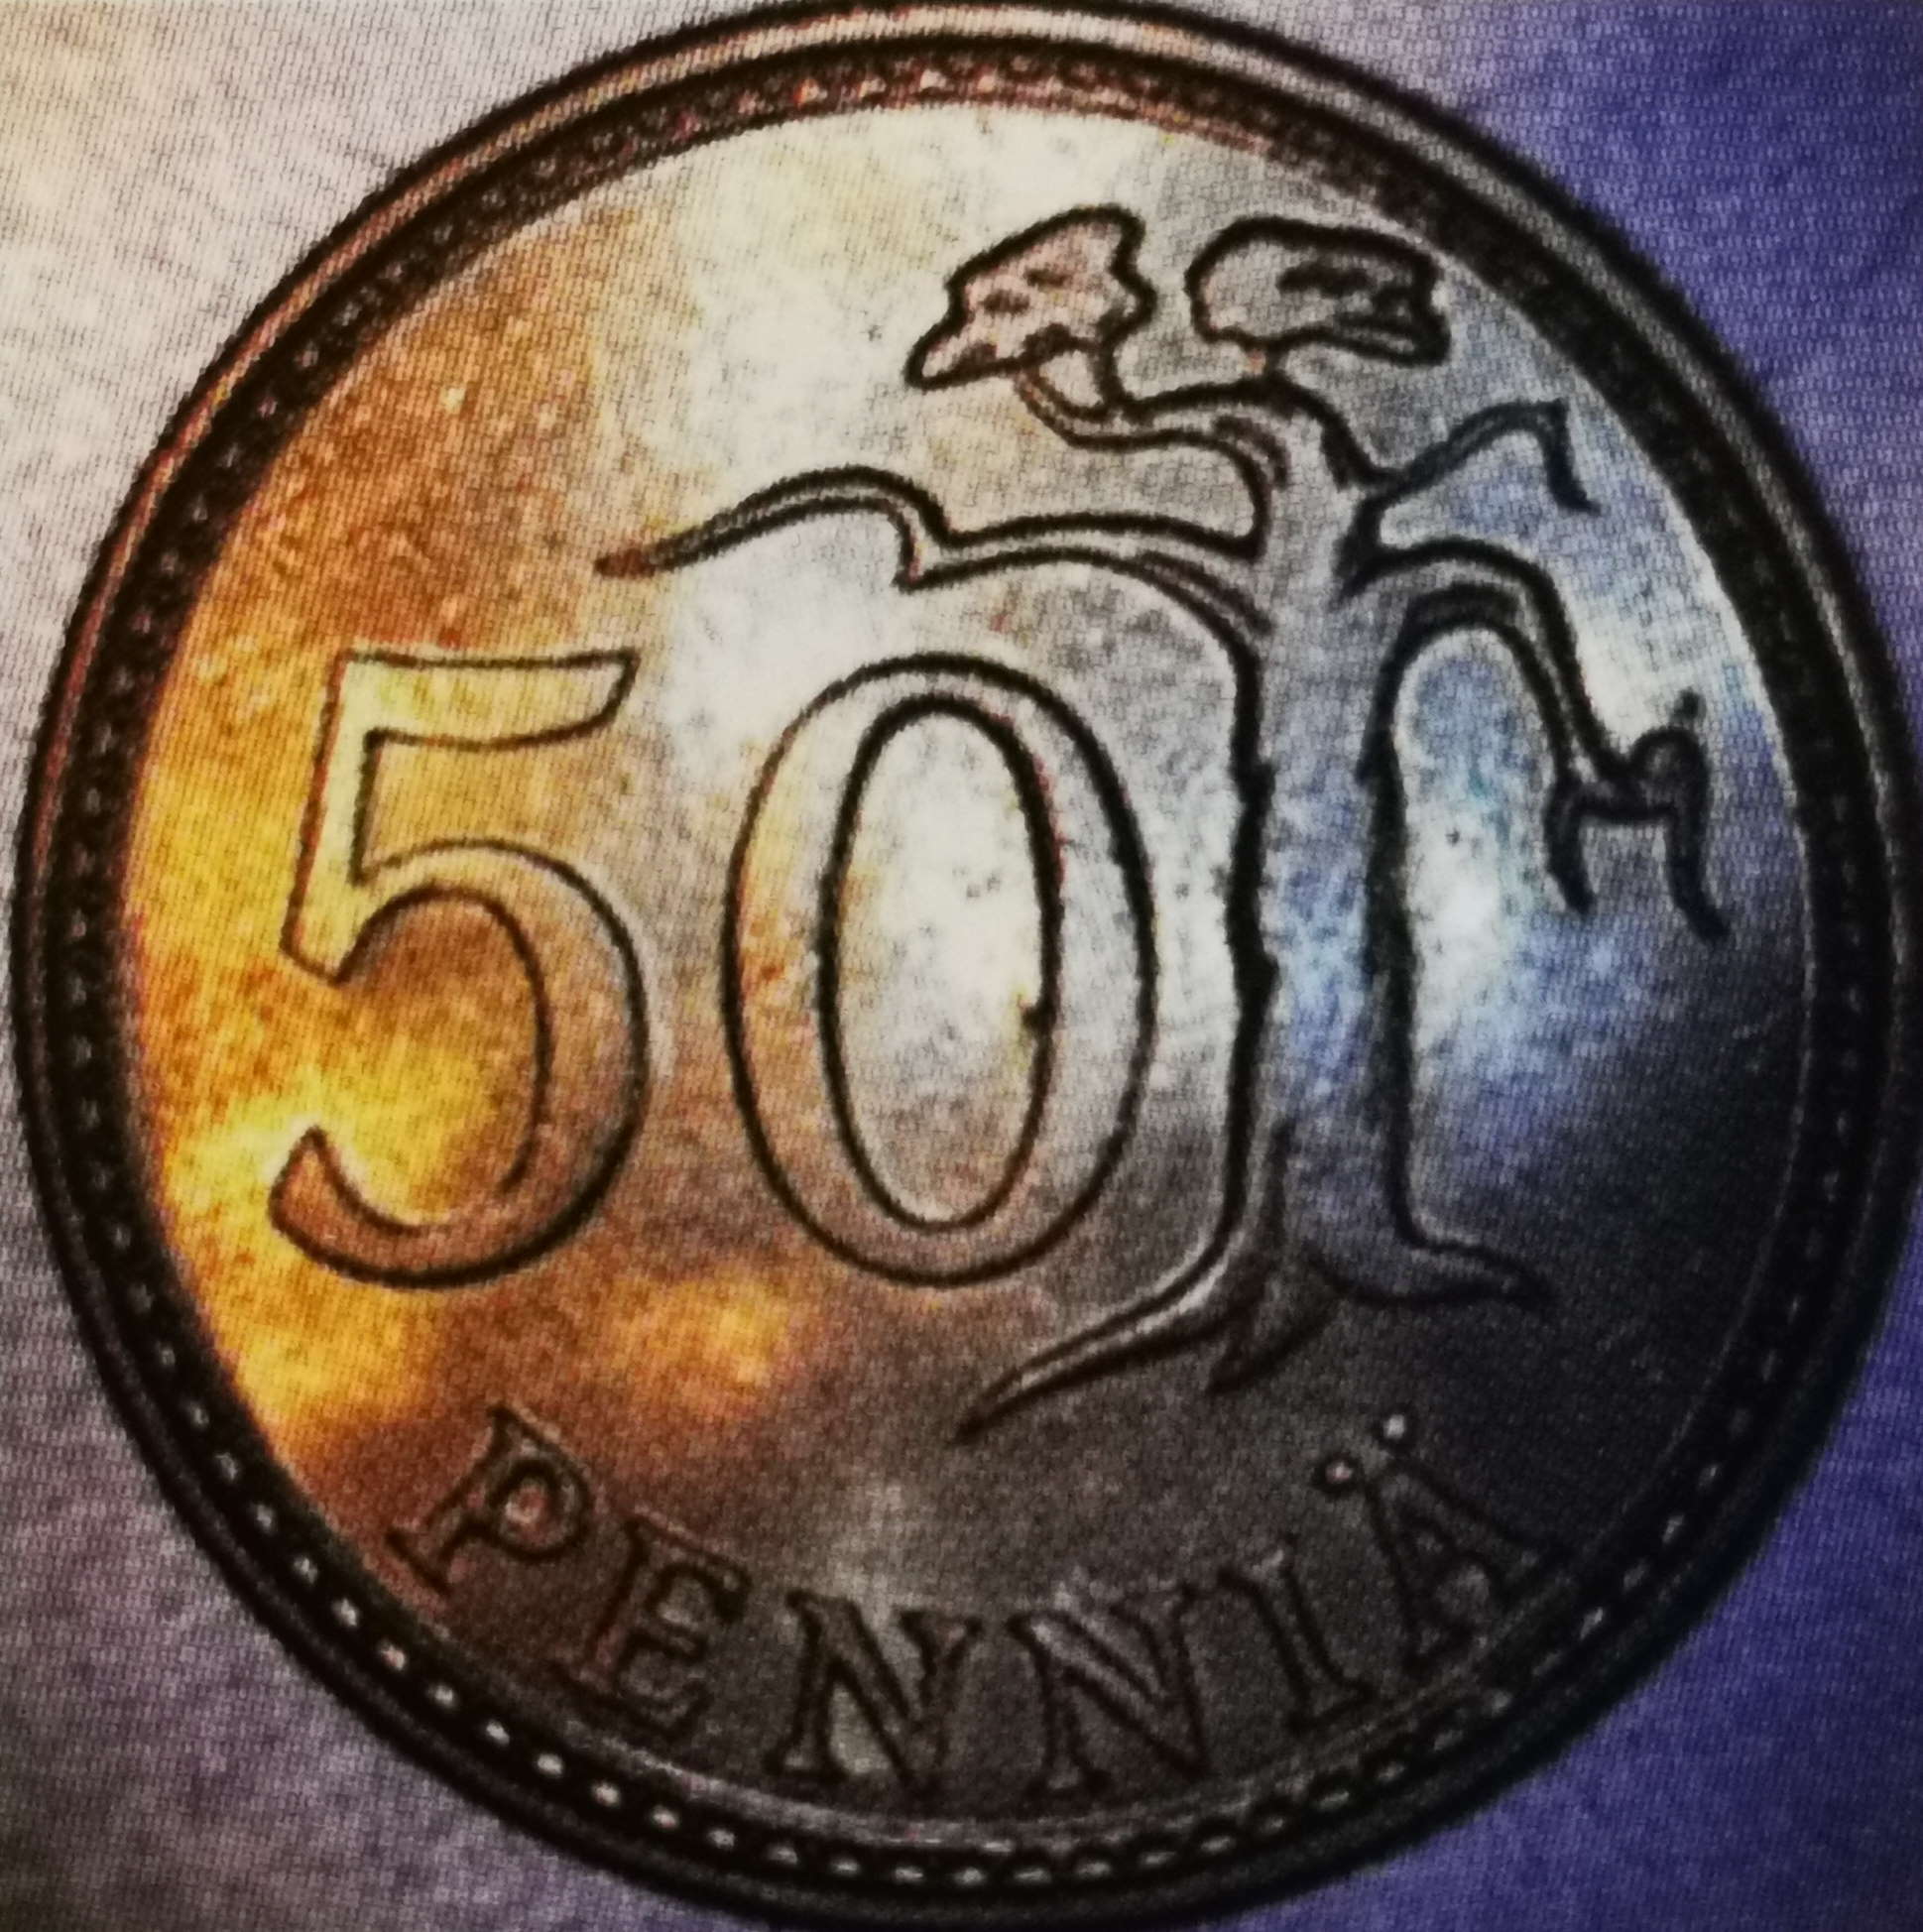 50 penniä 1989 variantti 1.2 arvopuoli